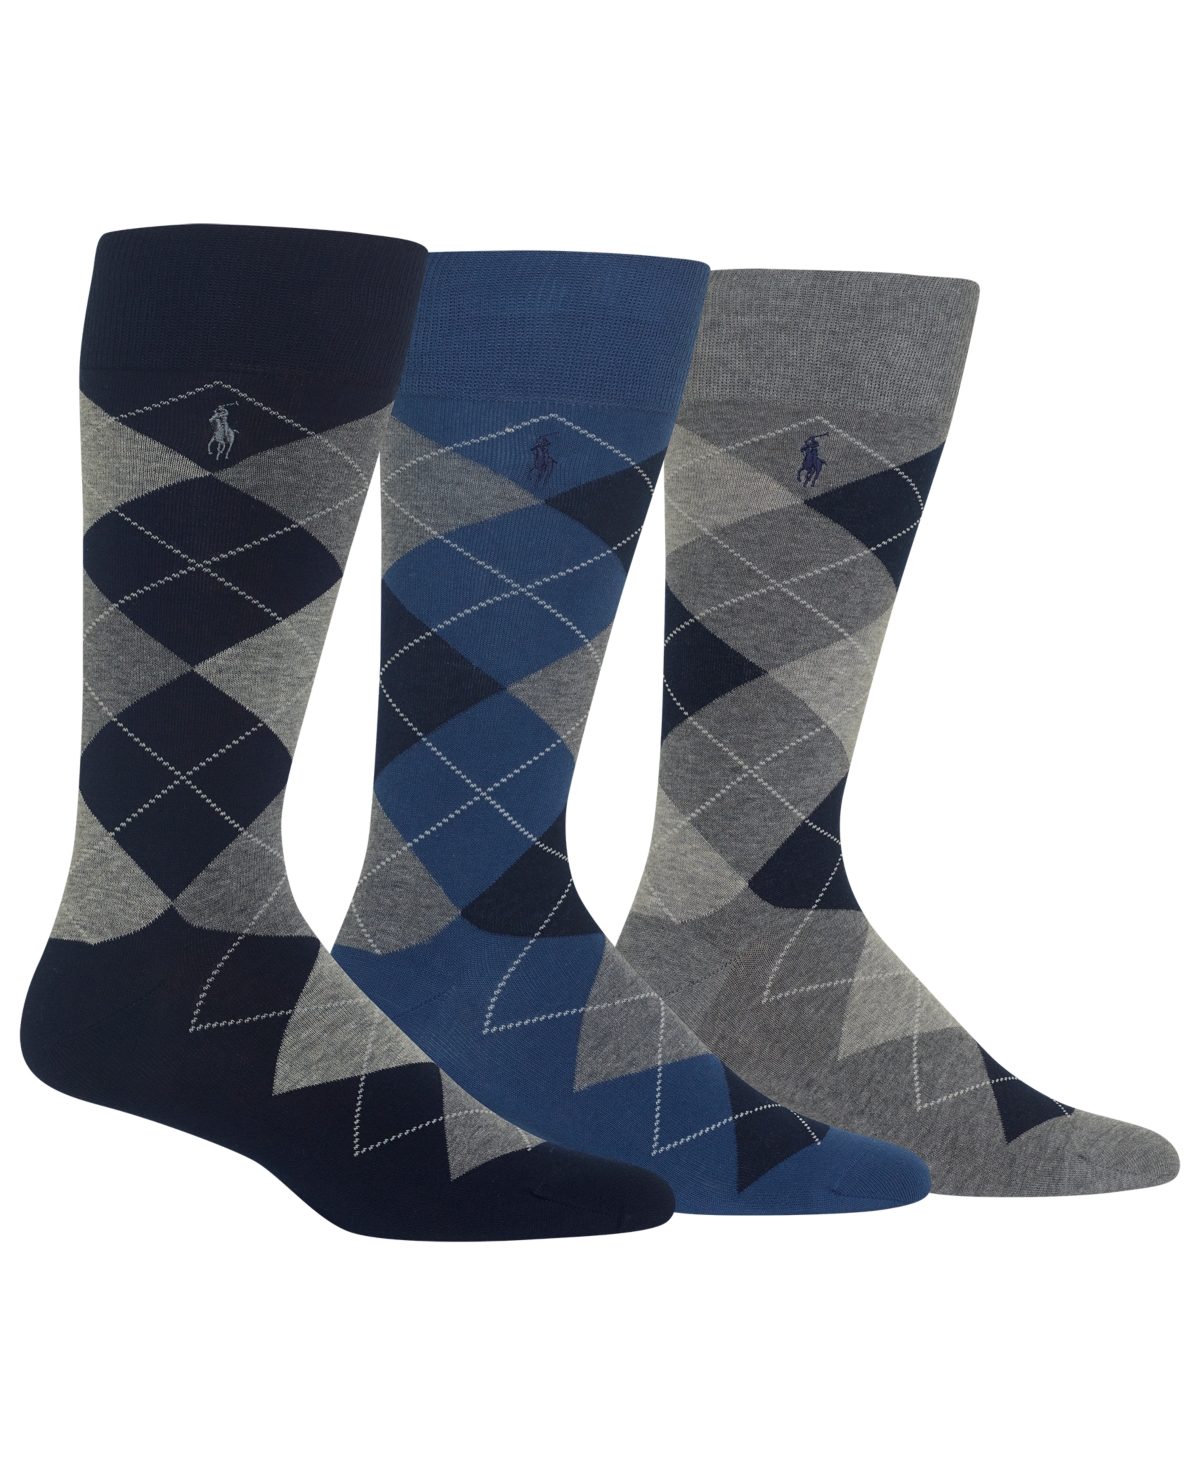 Polo Ralph Lauren Men's 3-pk. Argyle Dress Socks In Navy,grey